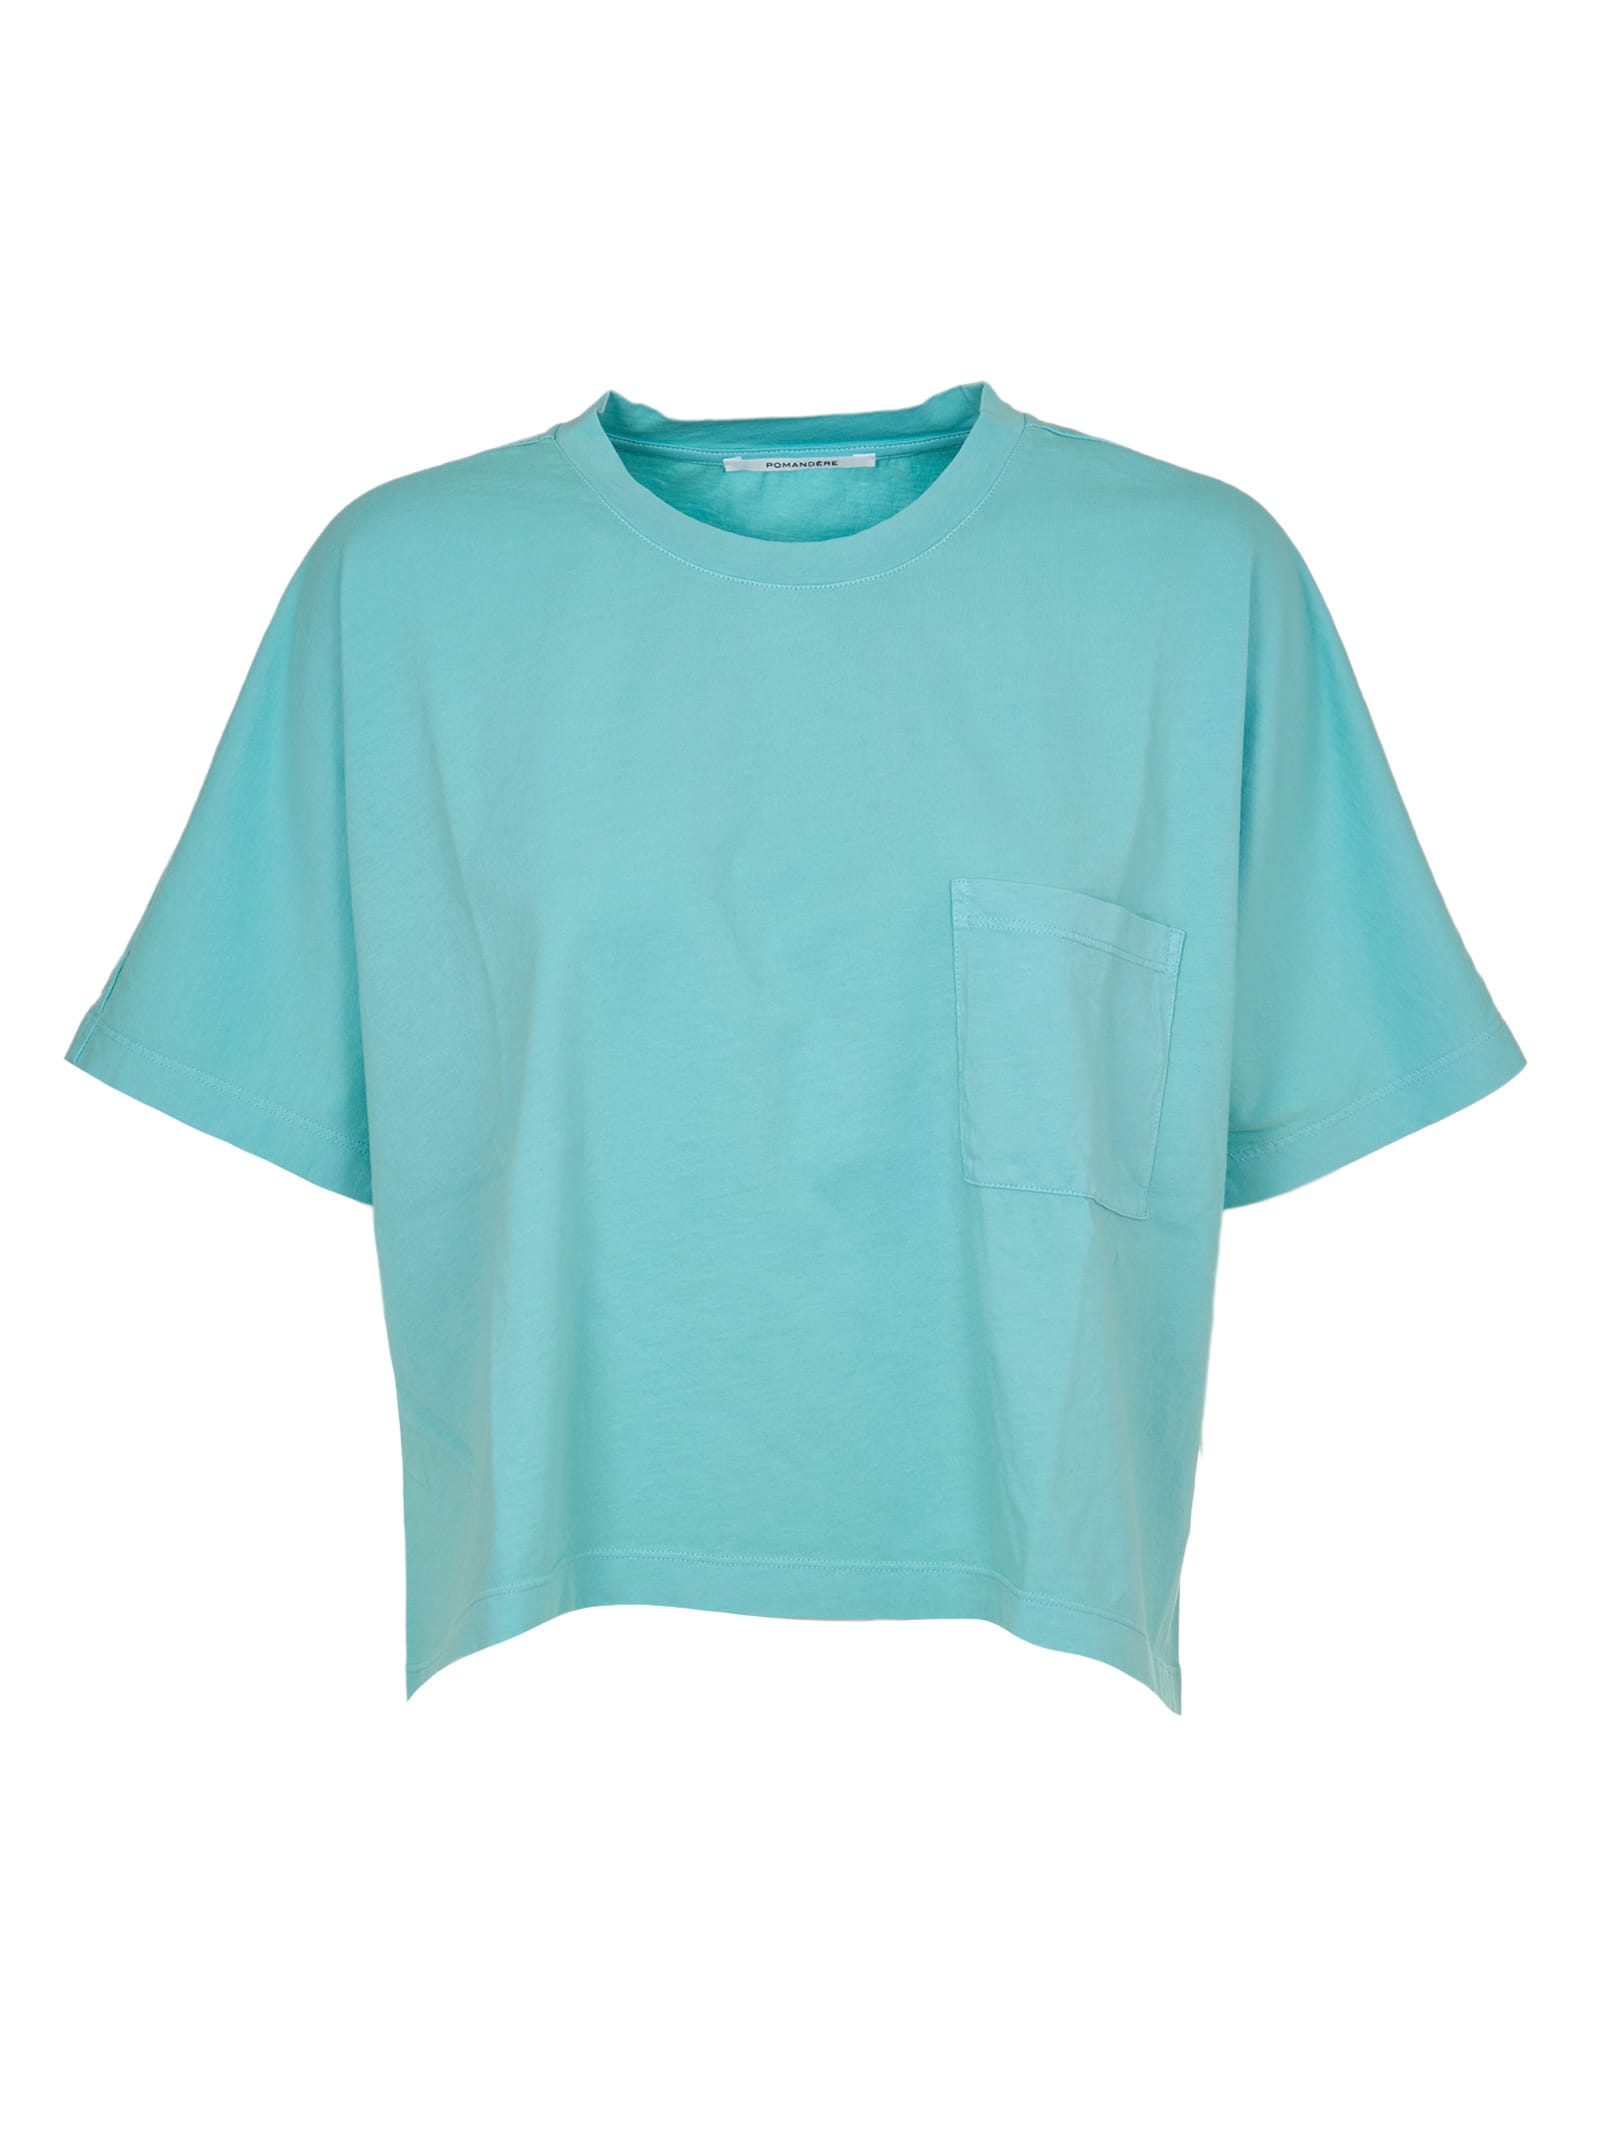 Pomandère Turquoise T-shirt